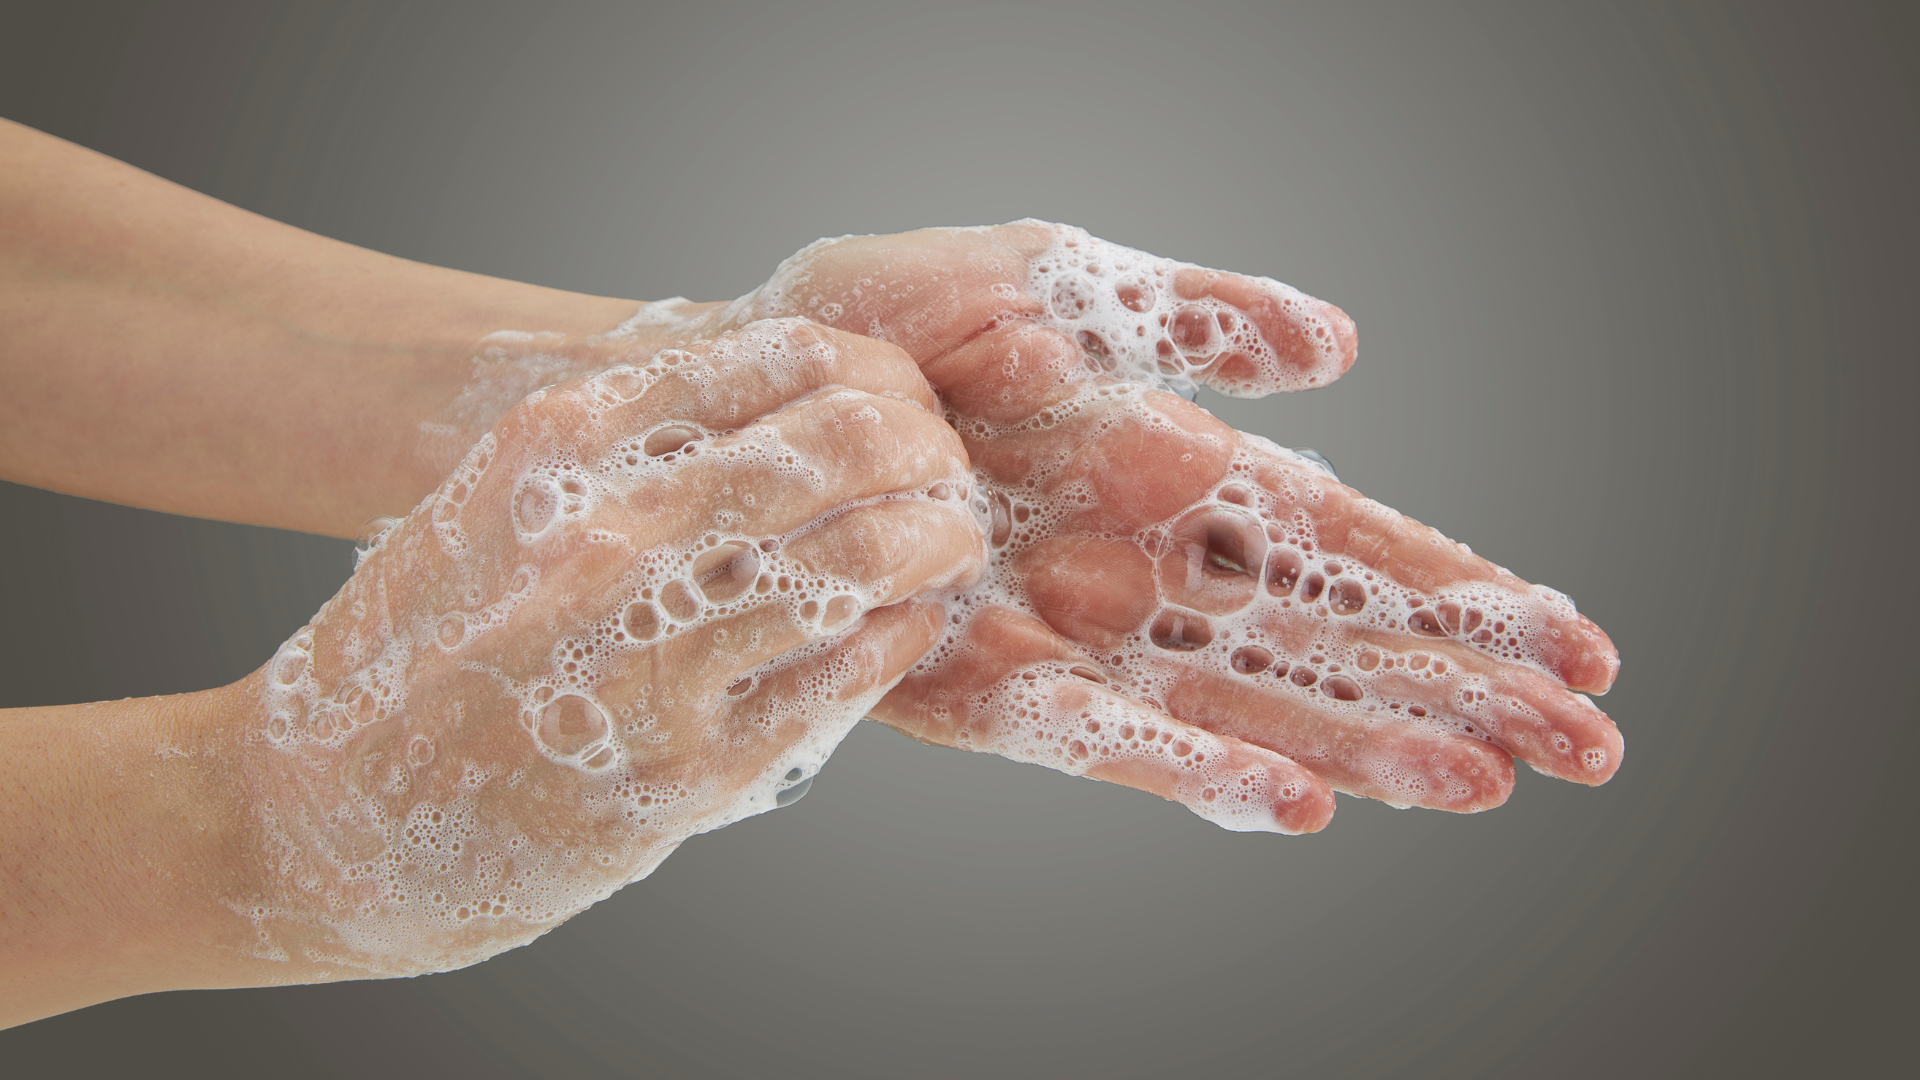 Higienização das mãos em locais públicos: como evitar a contaminação de dispensers?